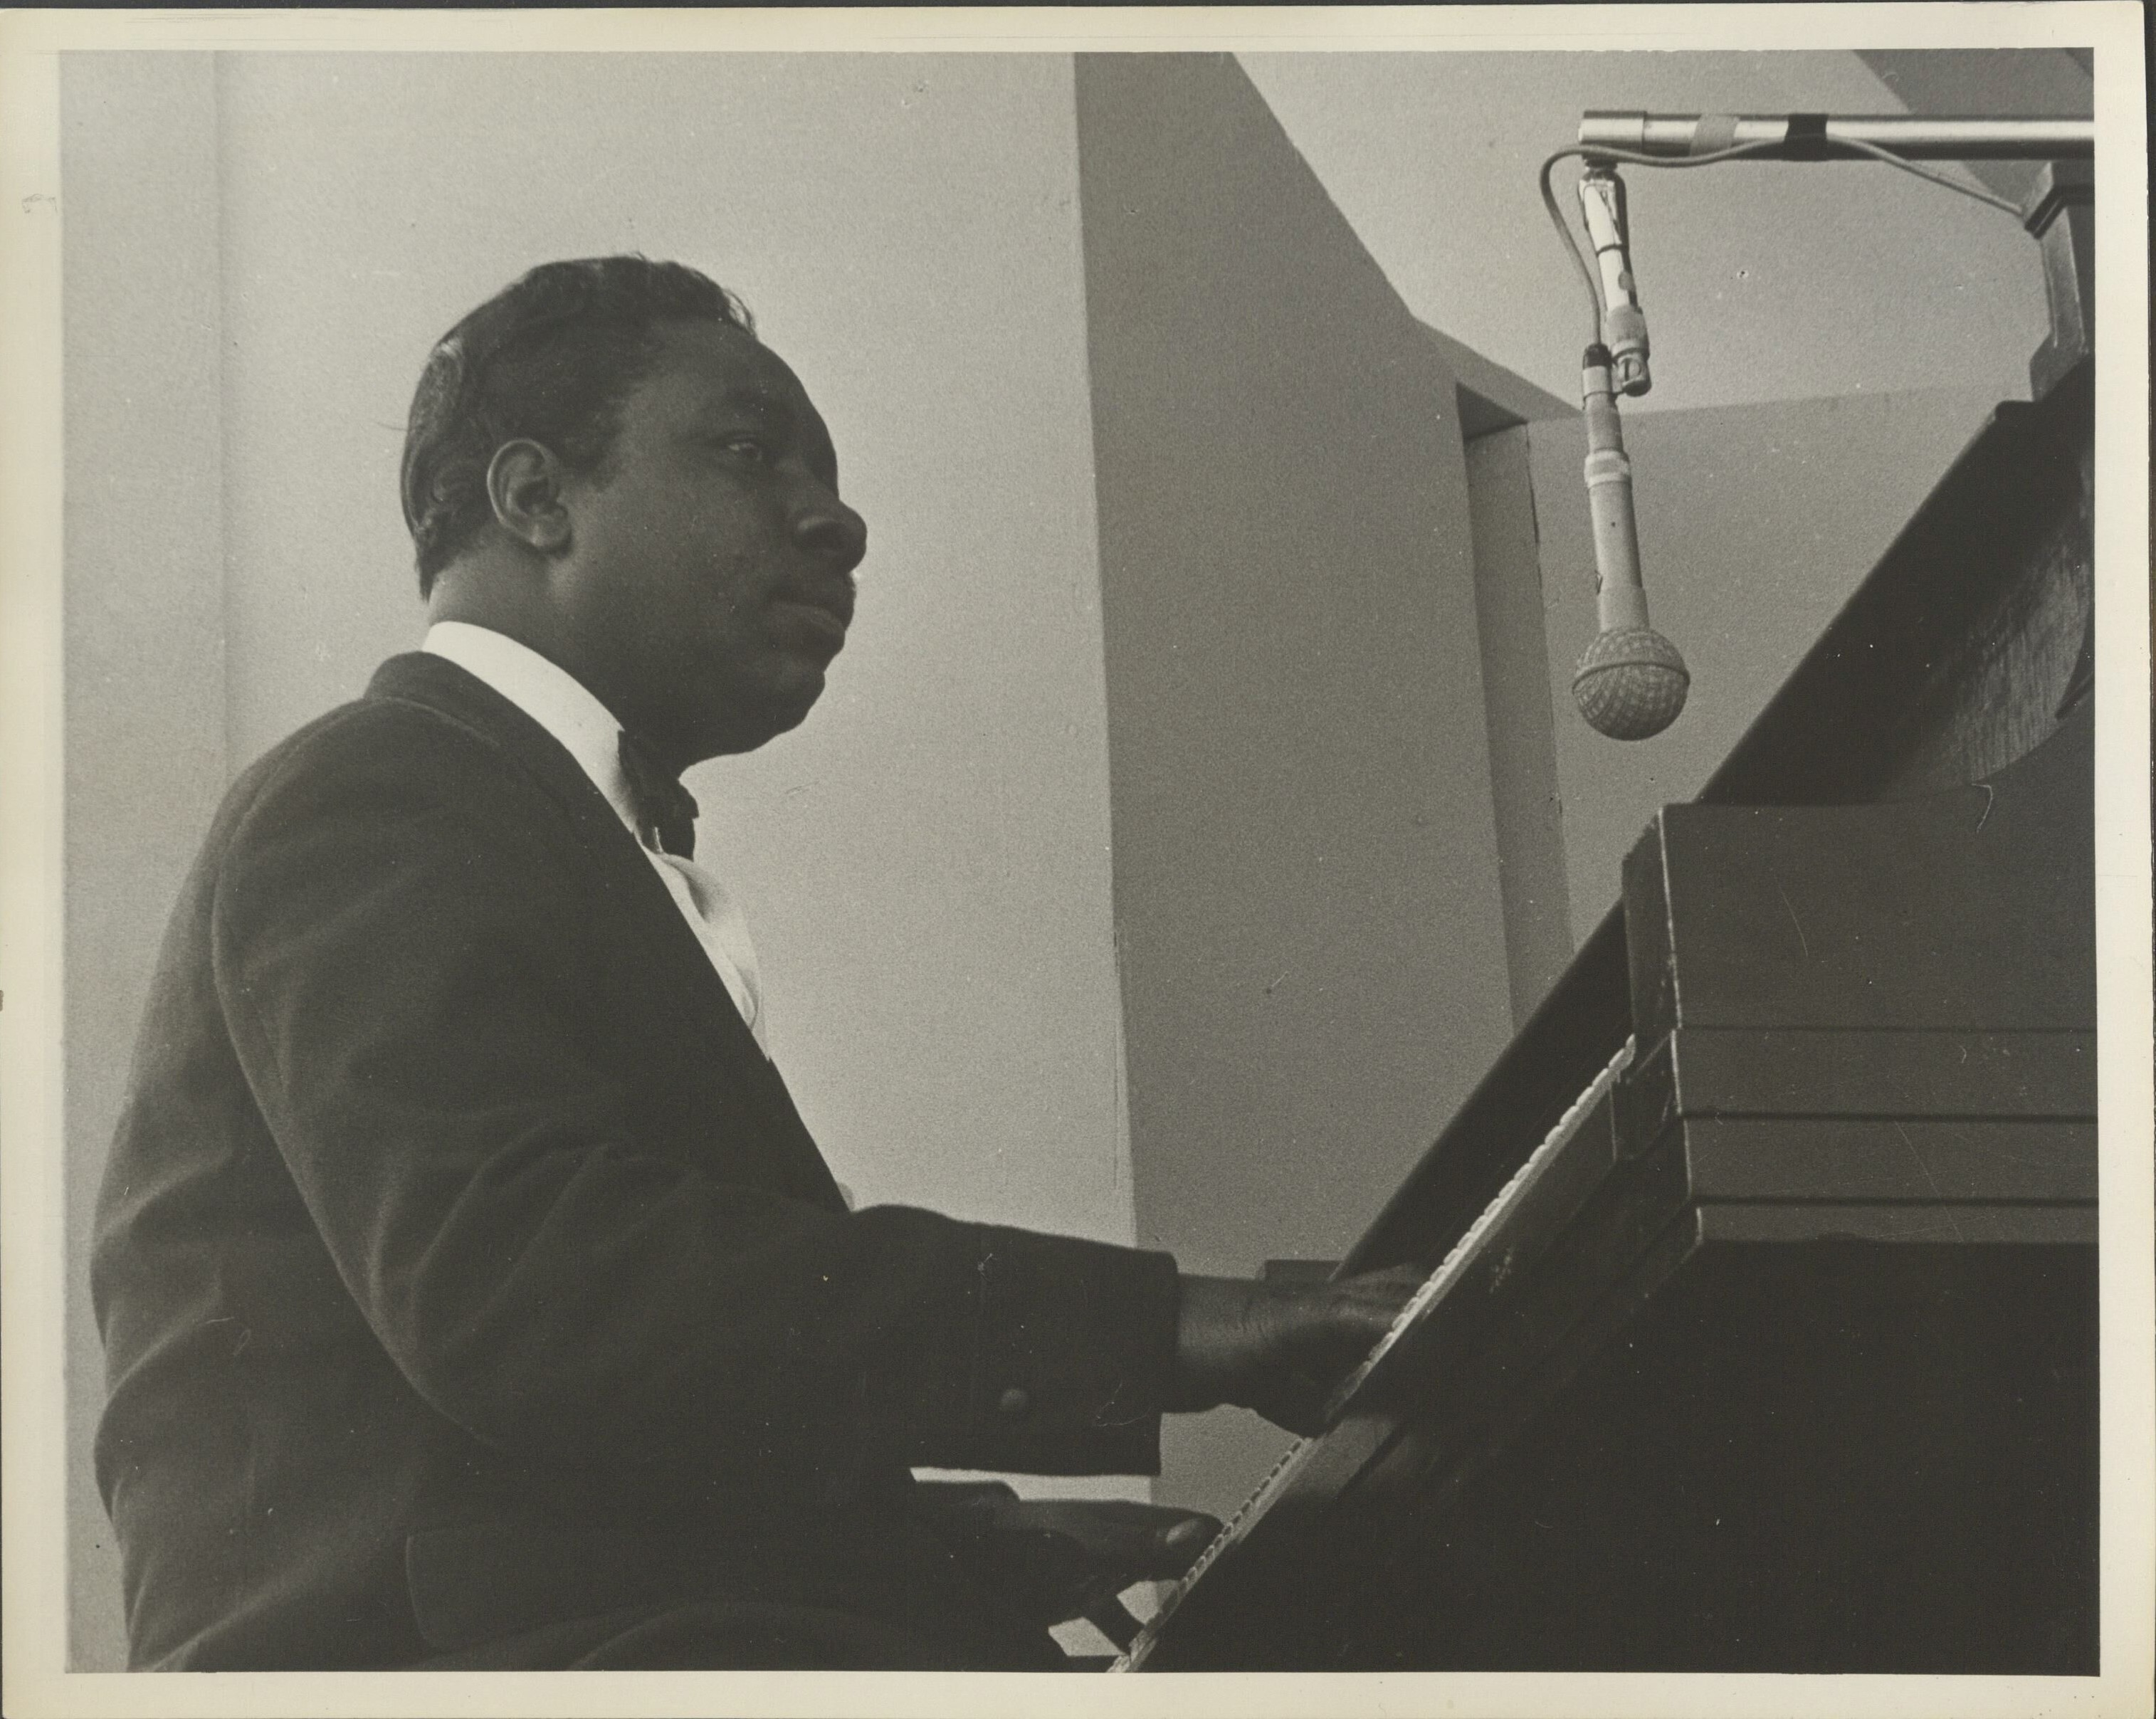 Otis Span playing piano. Credit: The Estate of Victor Kalin.